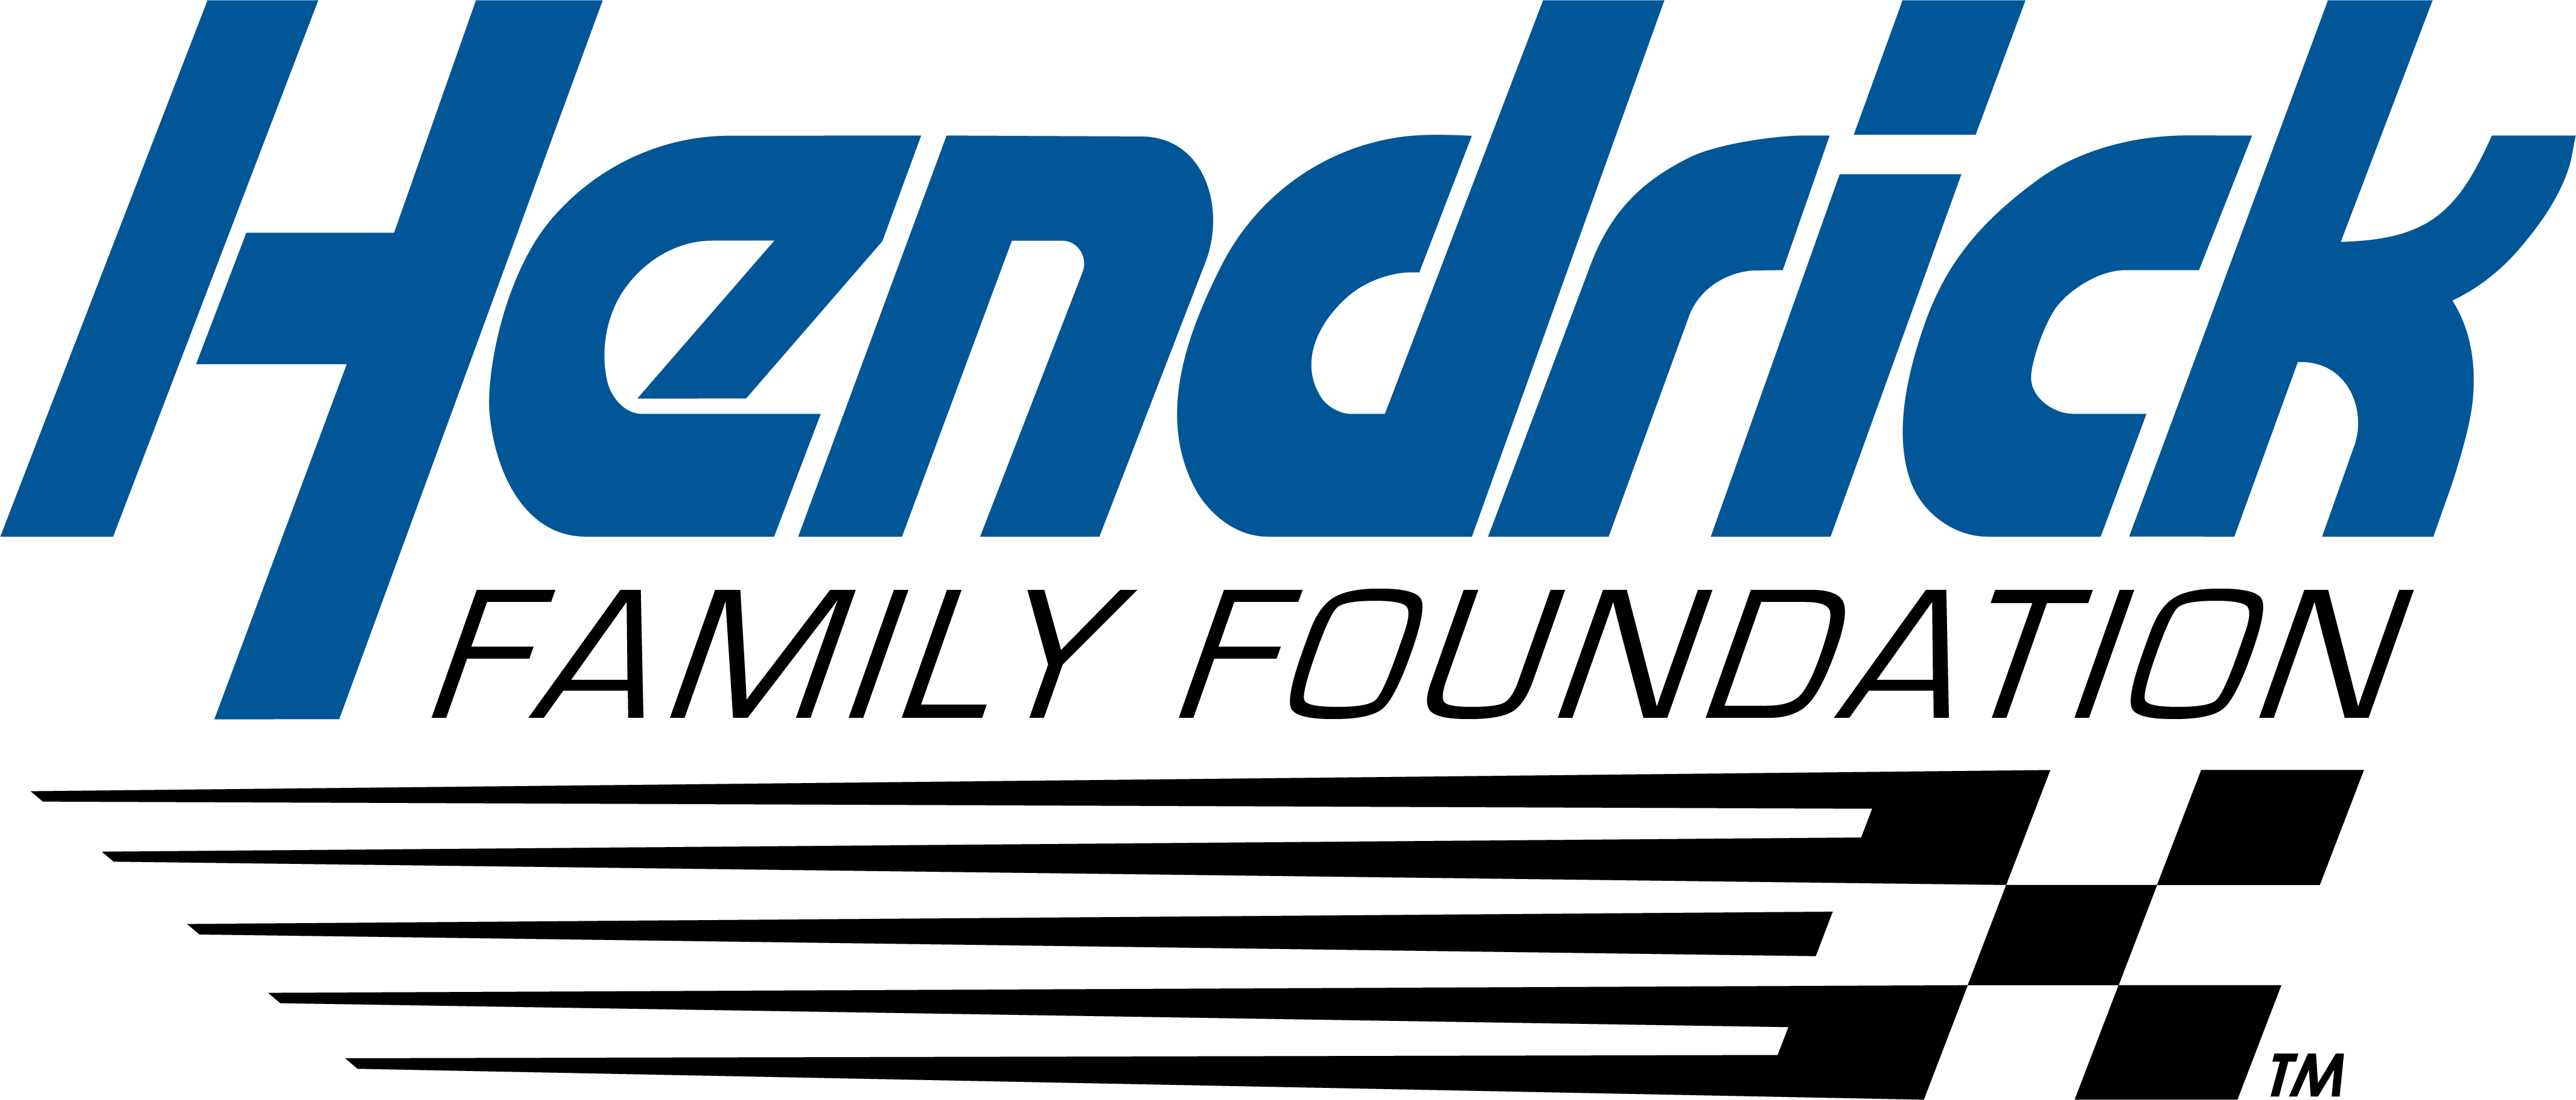 Hendrick Family Foundation logo